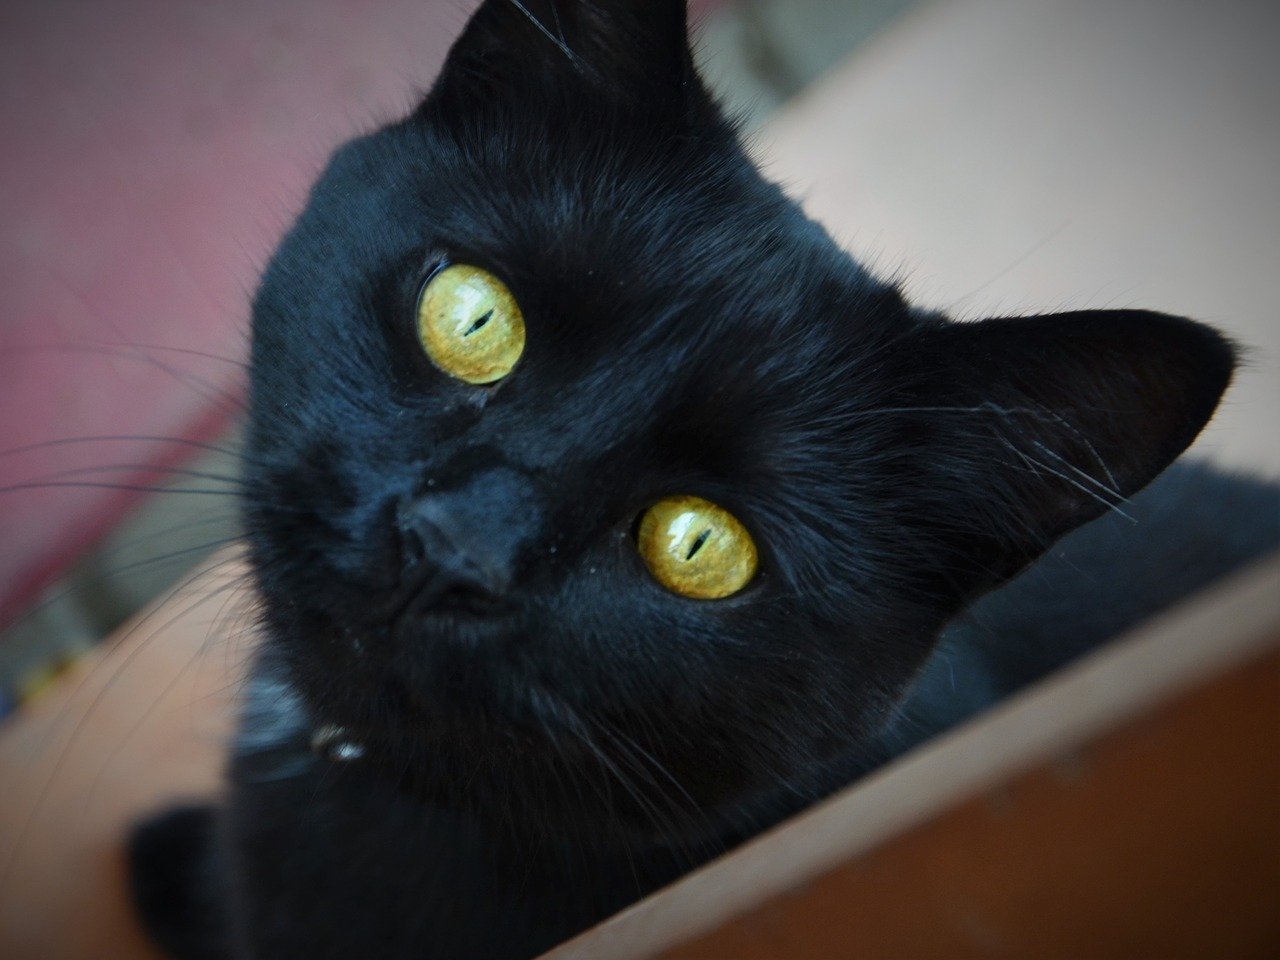 Порода черной кошки с желтыми глазами. Бомбейская кошка. Бомбейская кошка с желтыми глазами. Бомбейская кошка черная с желтыми глазами. Черная Бомбейская кошка с зелеными глазами.